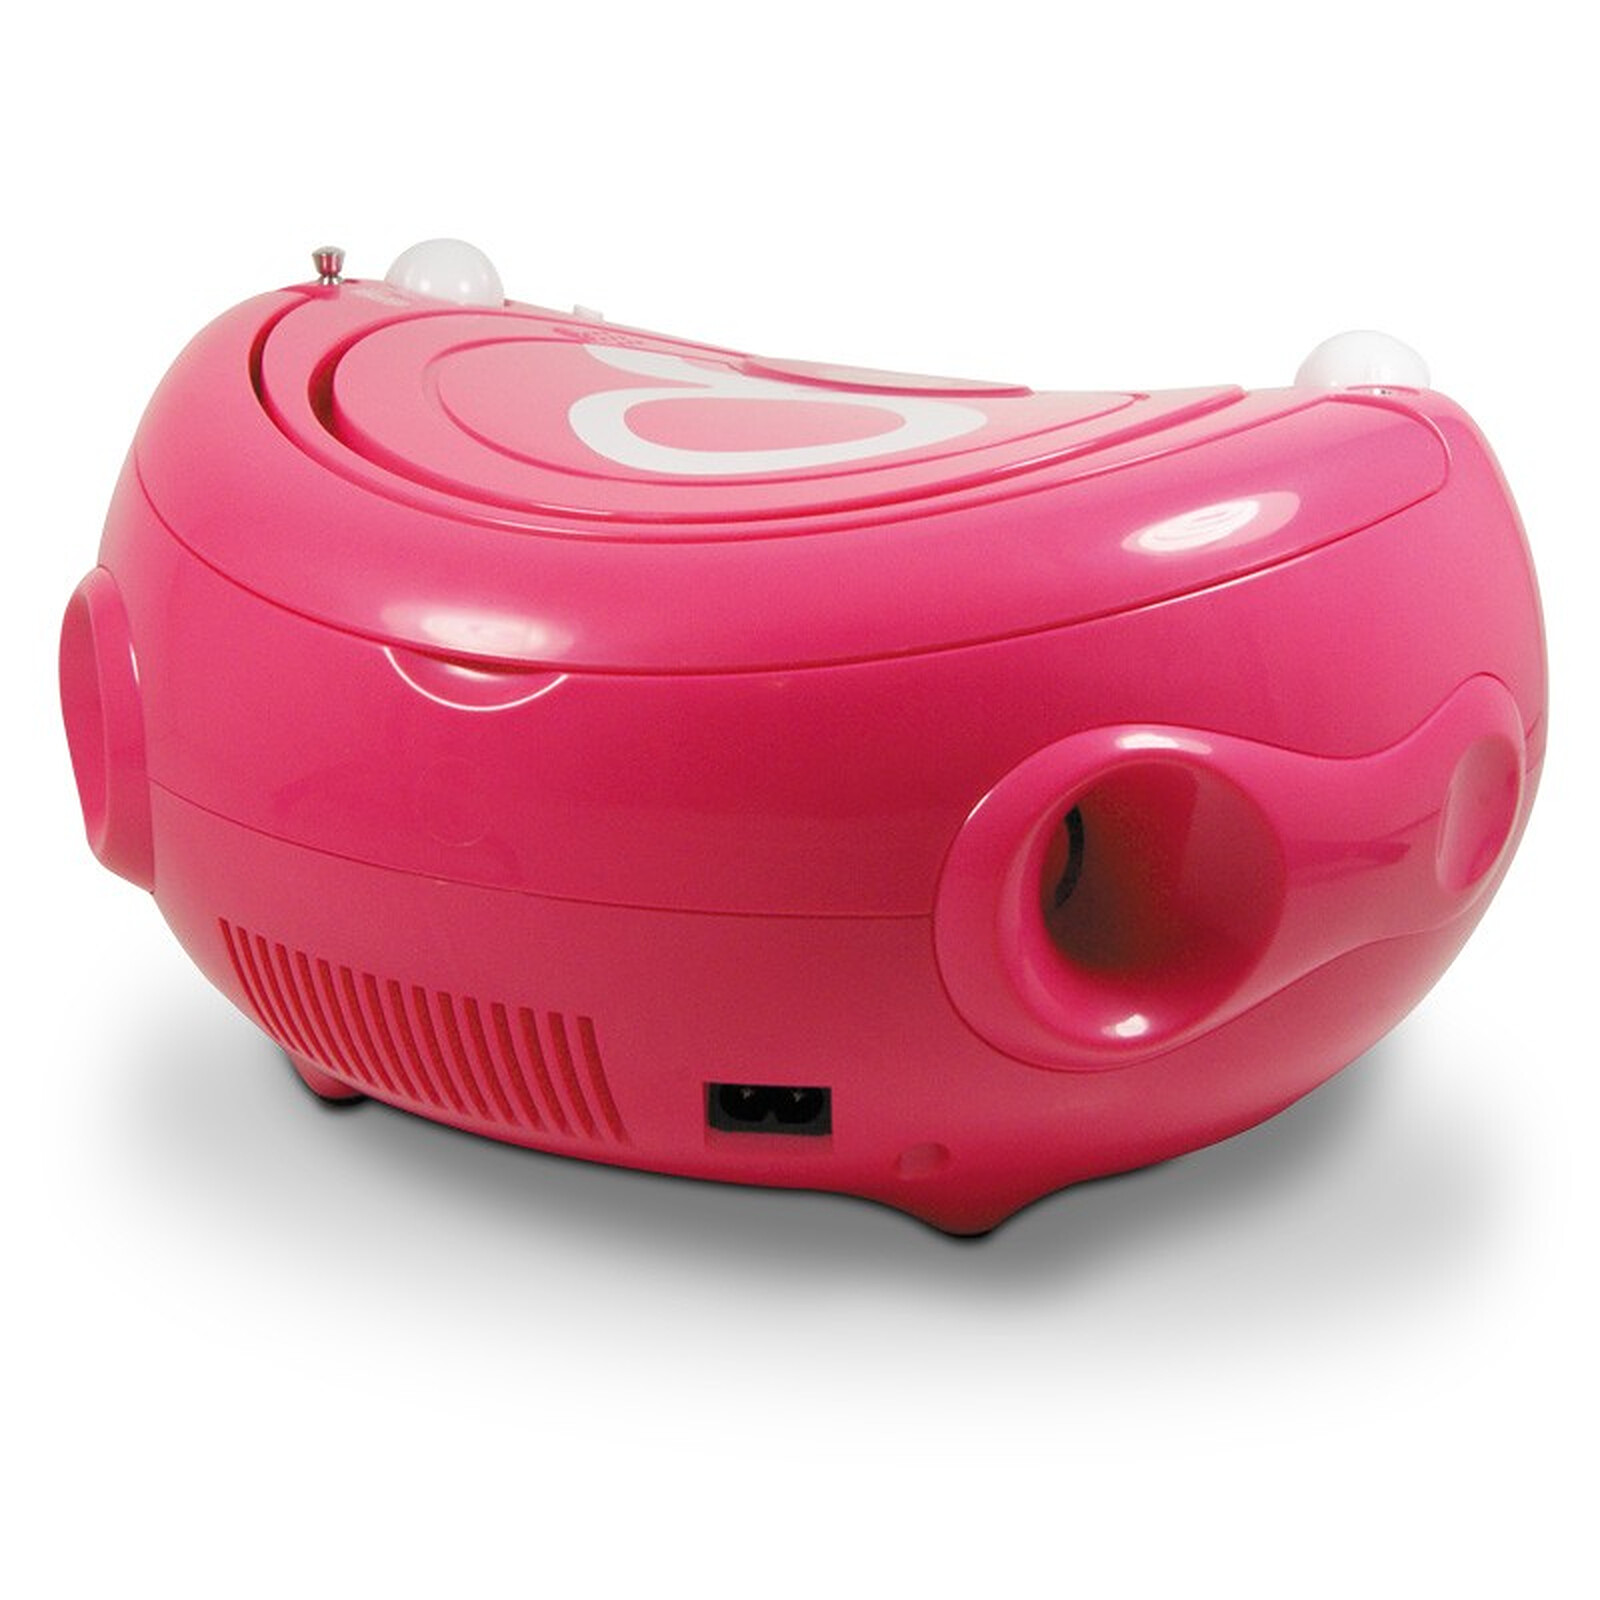 Gulli 477148 - Lecteur CD MP3 enfant avec port USB - rose et blanc